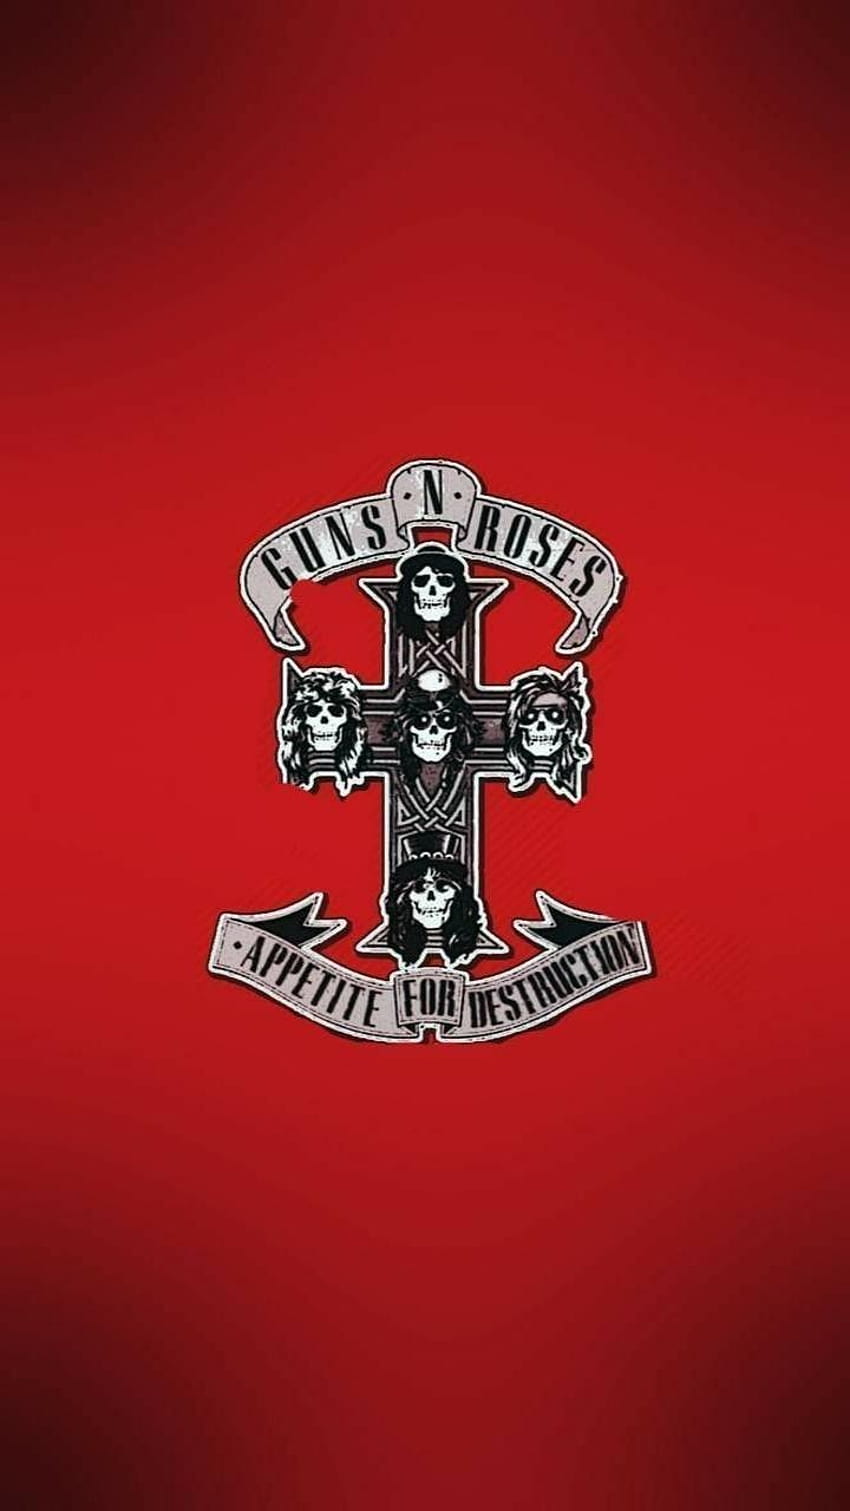 Guns N' Roses / Appetite for Destruction HD phone wallpaper